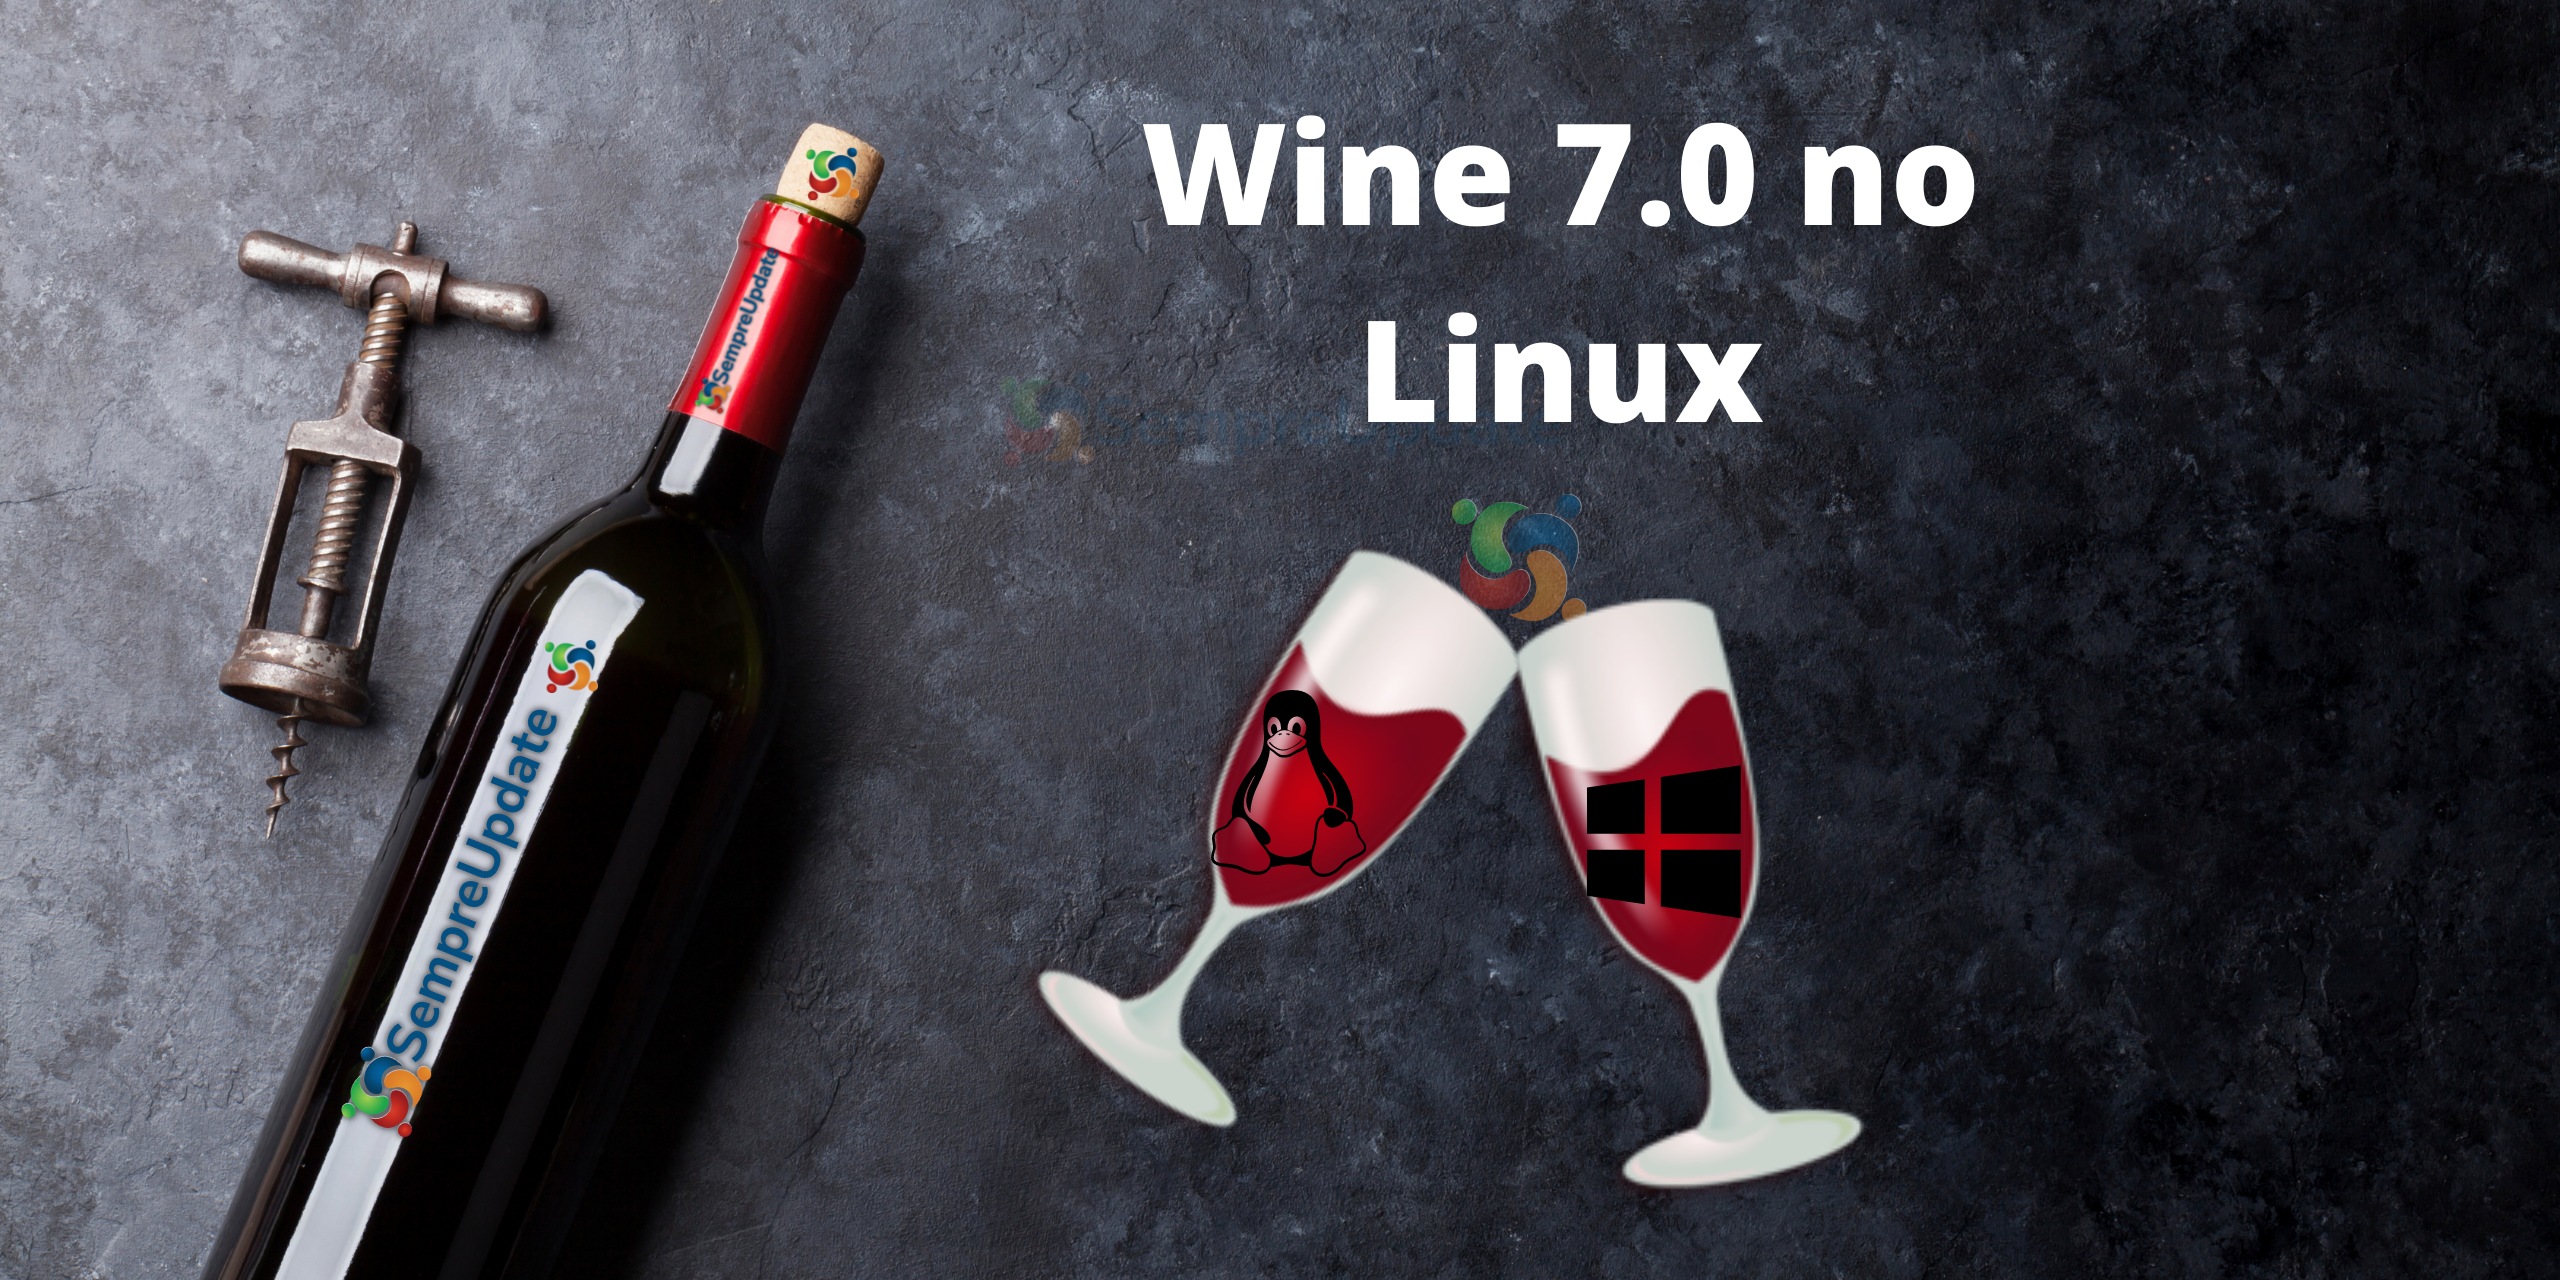 como-instalar-wine-7-0-tar-xz-no-linux